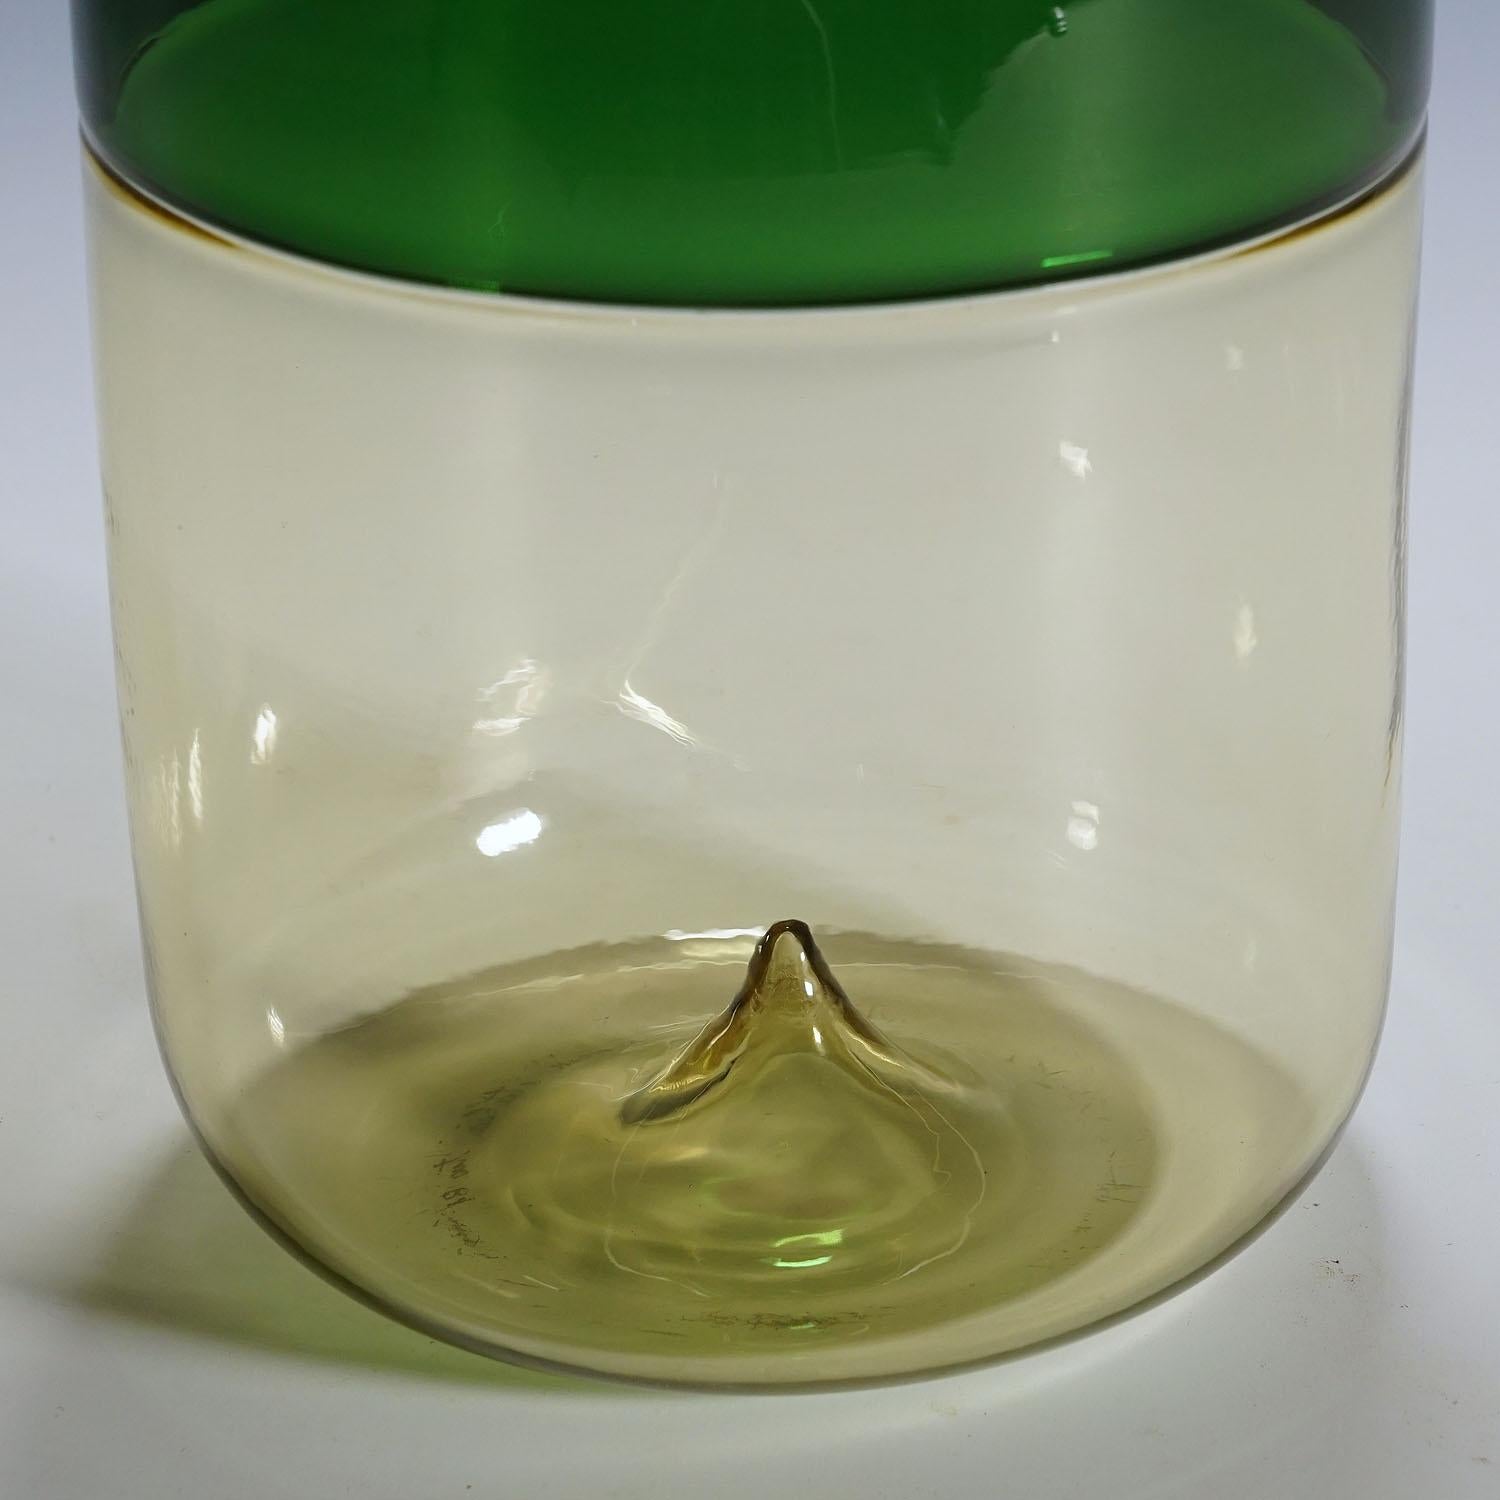 Vase en verre d'art Venini 'Bolle' de Tapio Wirkkala pour Venini, Murano 1966

Un vase en verre d'art vintage de la série 'Bolle'. Verre mince soufflé à la bouche, paille et vert pomme, fusionné selon la technique de l'incalmo. Conçu par Tapio